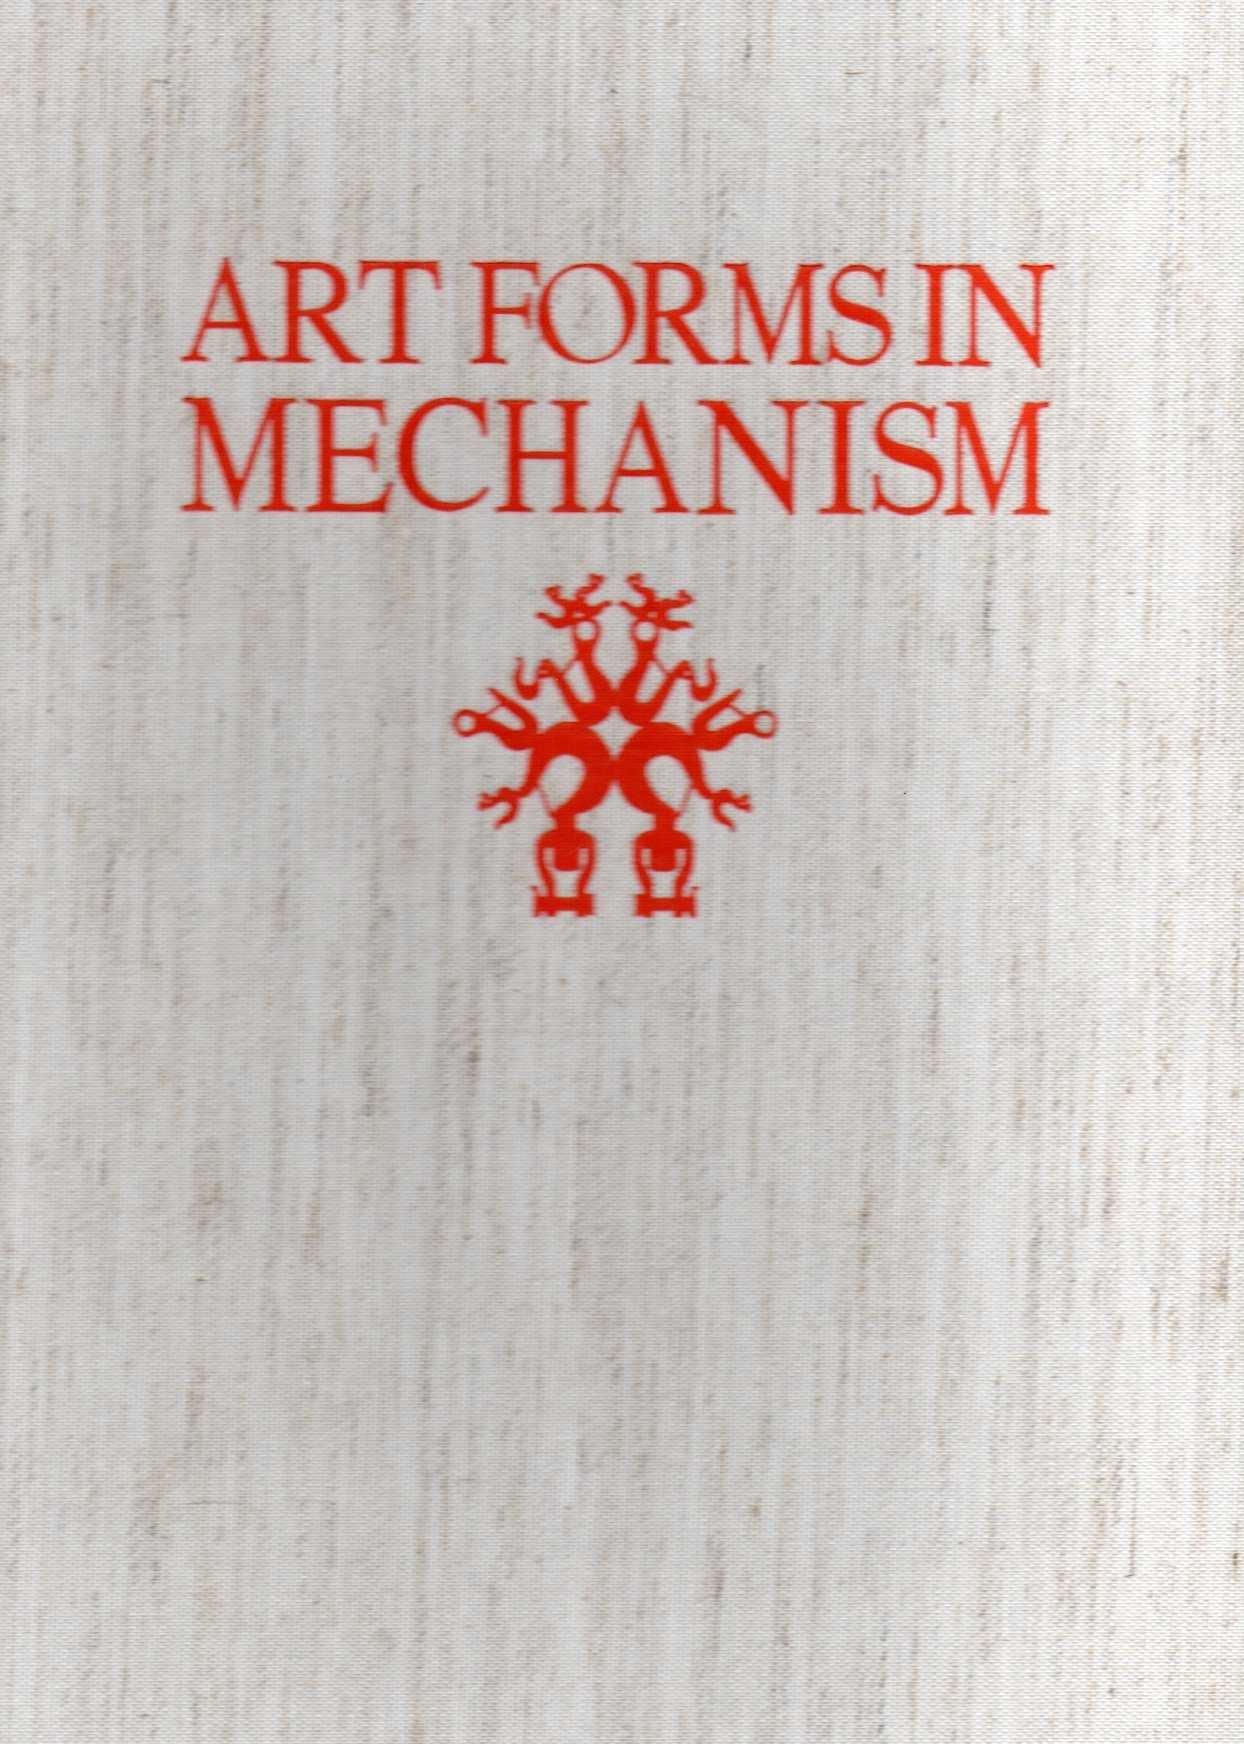 ART FORMS IN MECHANISM